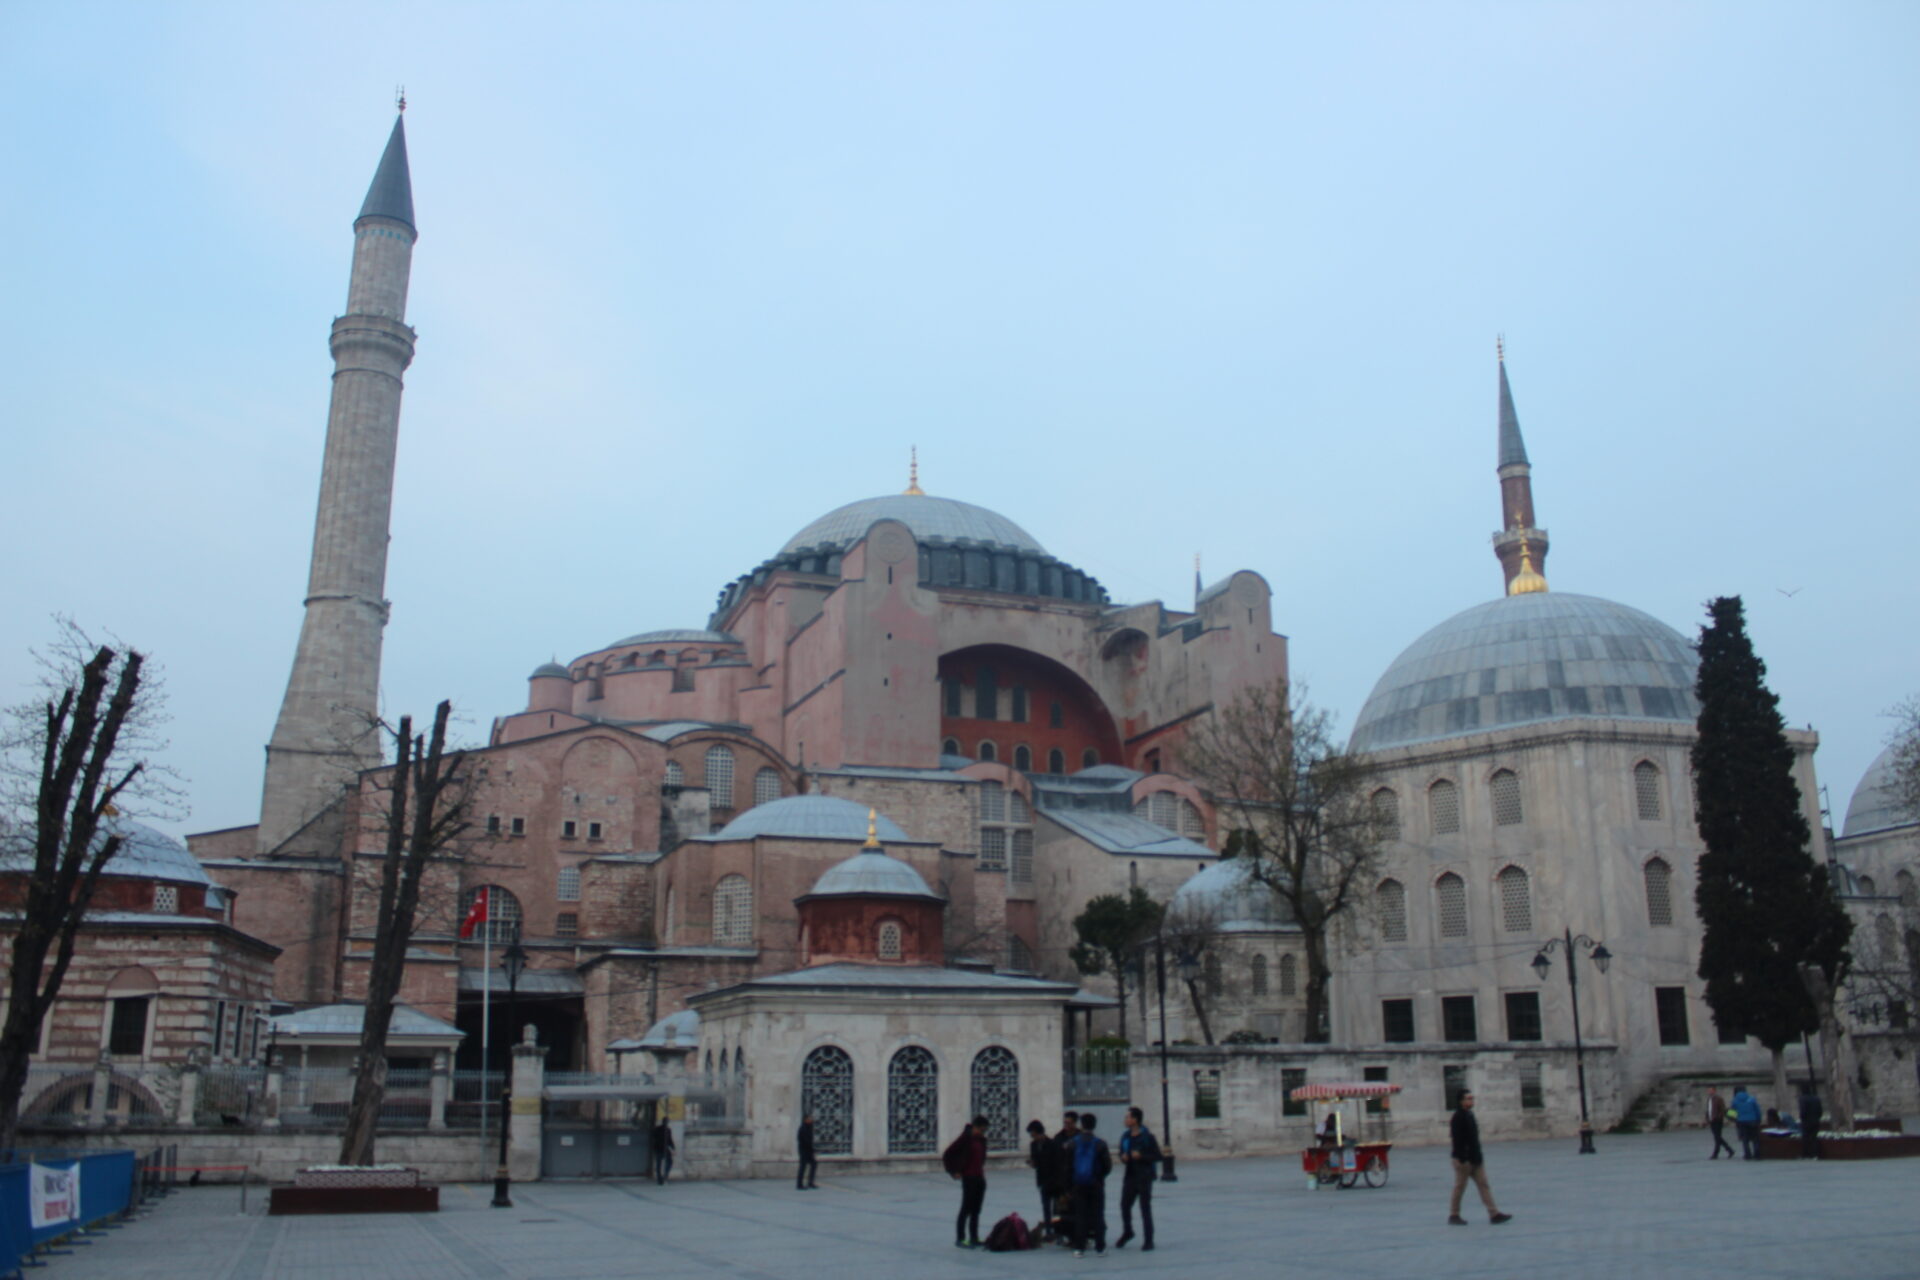 Construite au VIe siècle, la basilique Sainte-Sophie d'Istanbul est inscrite au patrimoine mondial de l'UNESCO | wikimedia commons Sami Mlouhi CC BY-SA 4.0